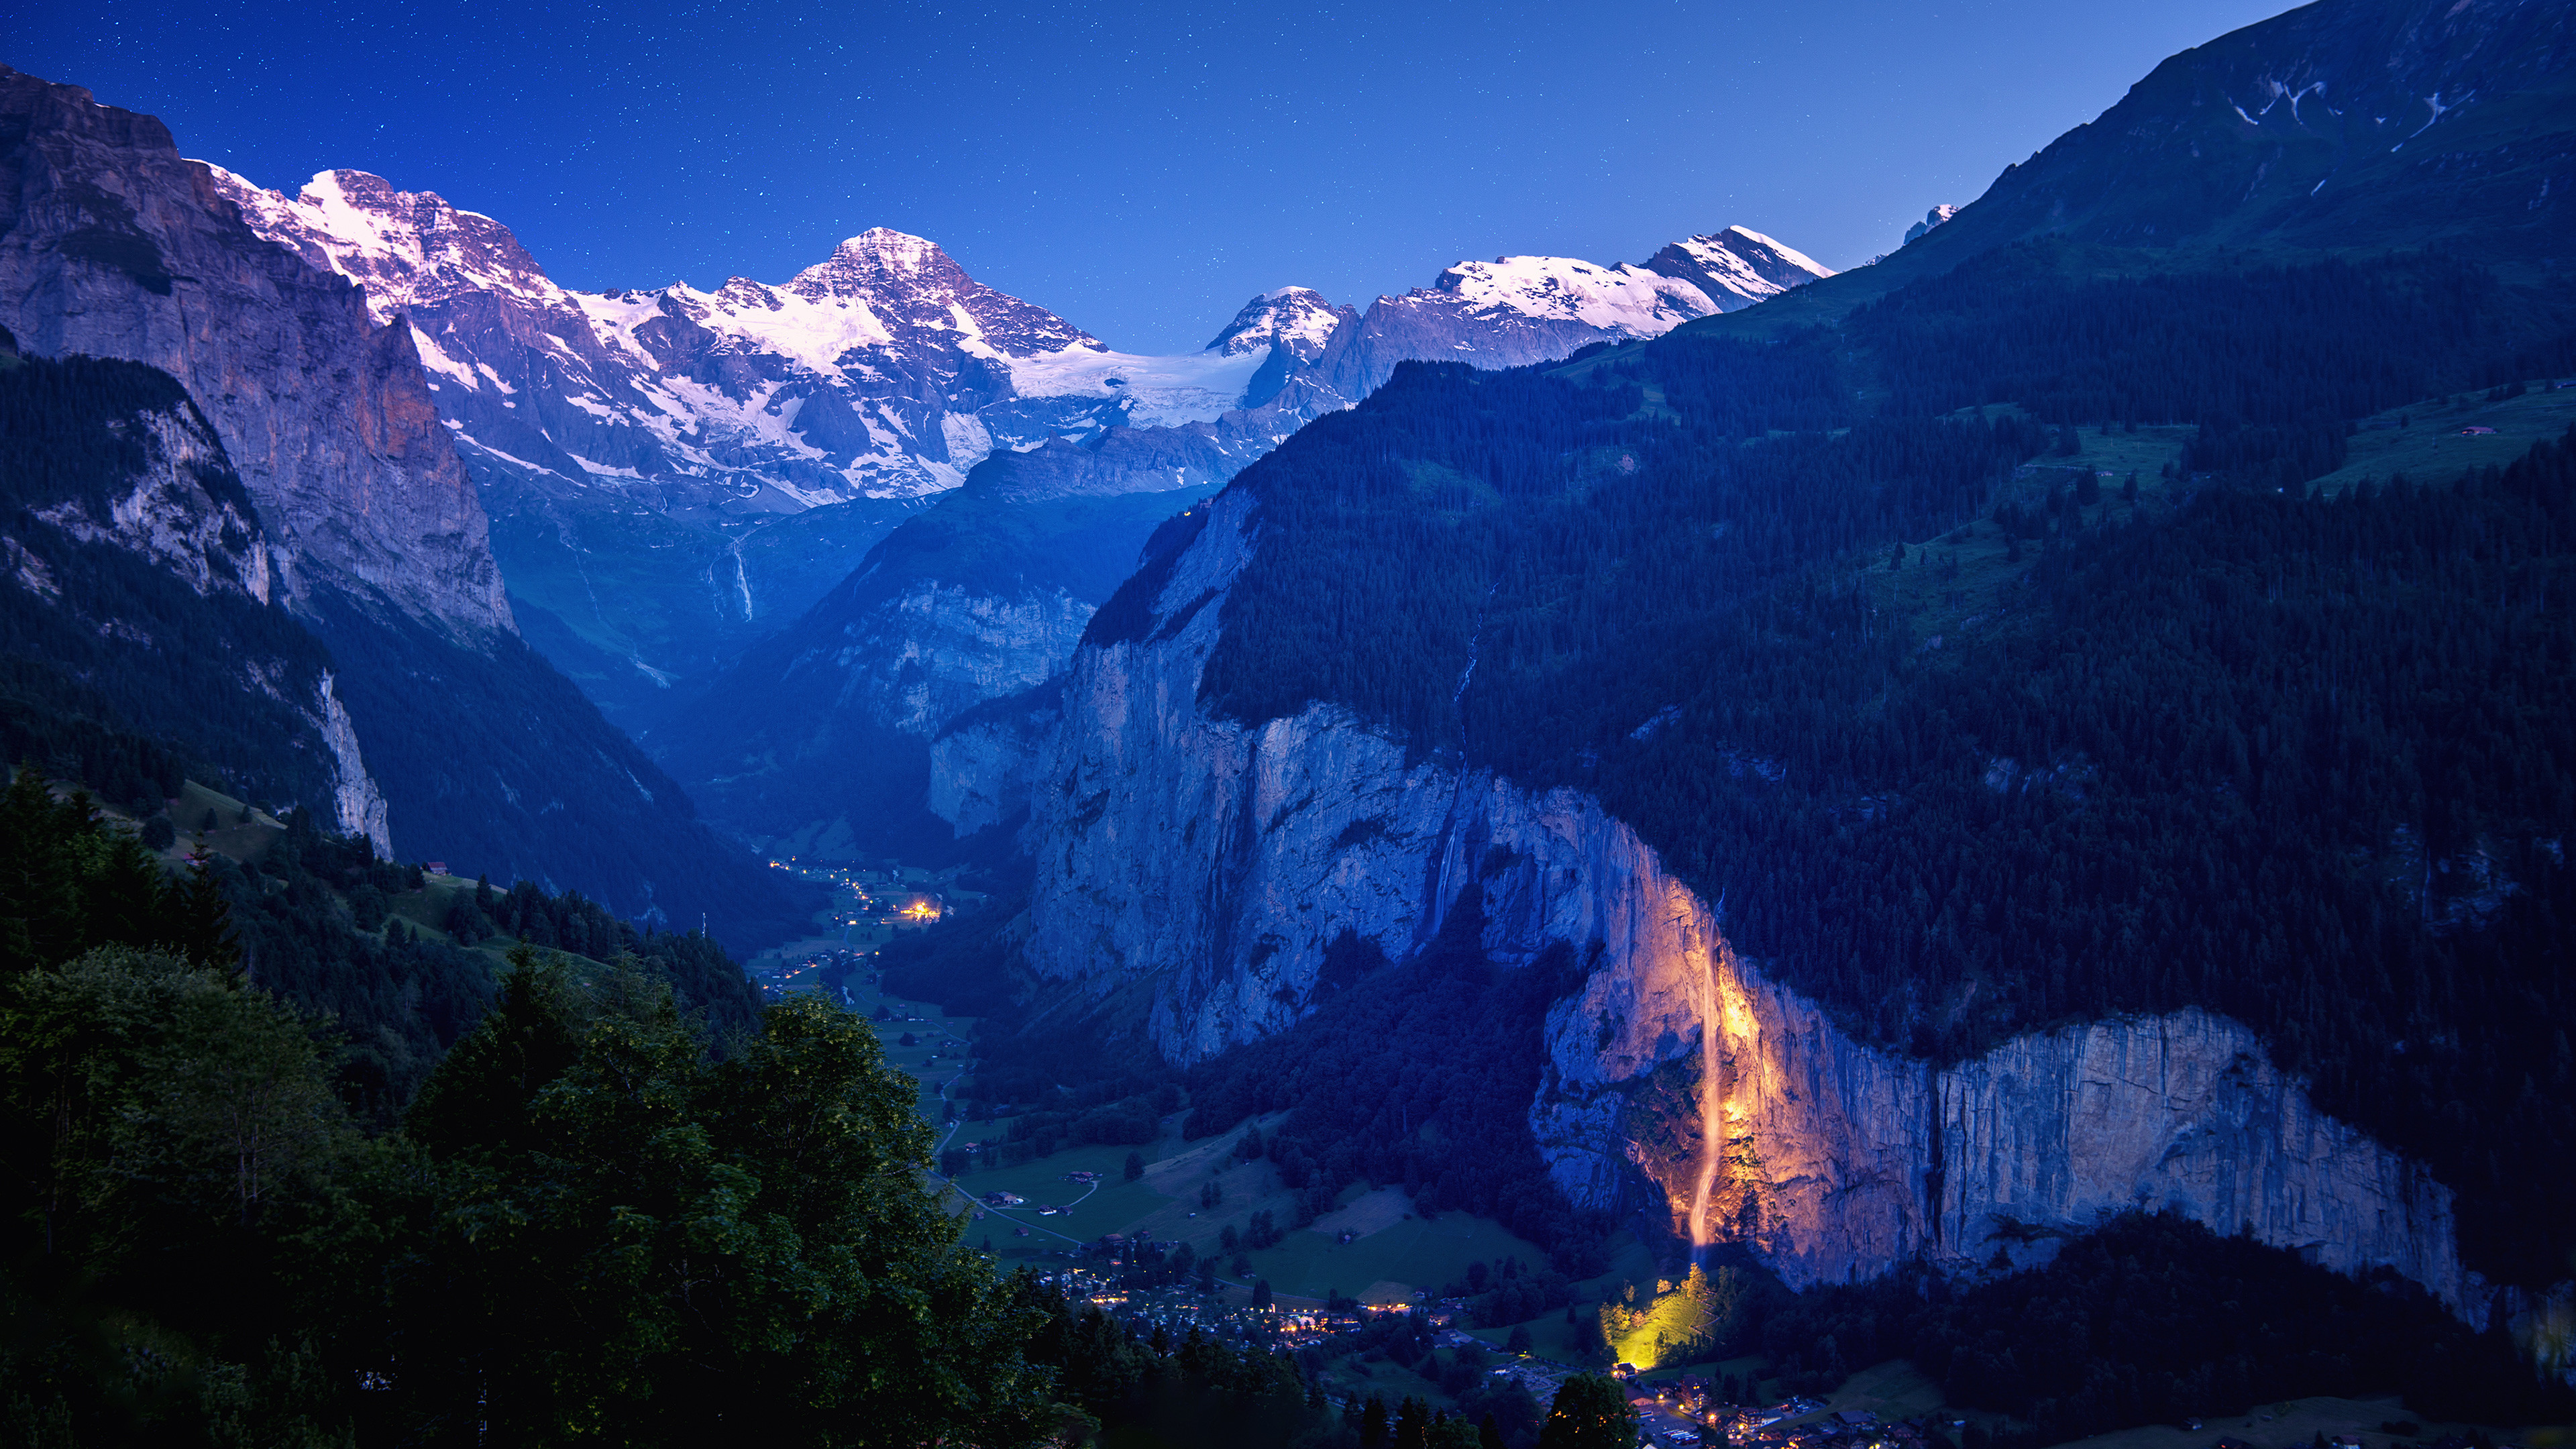 3840x2160, Switzerland Landscape 4k 
 Data Id 13585 - Landscape Wallpaper 4k - HD Wallpaper 